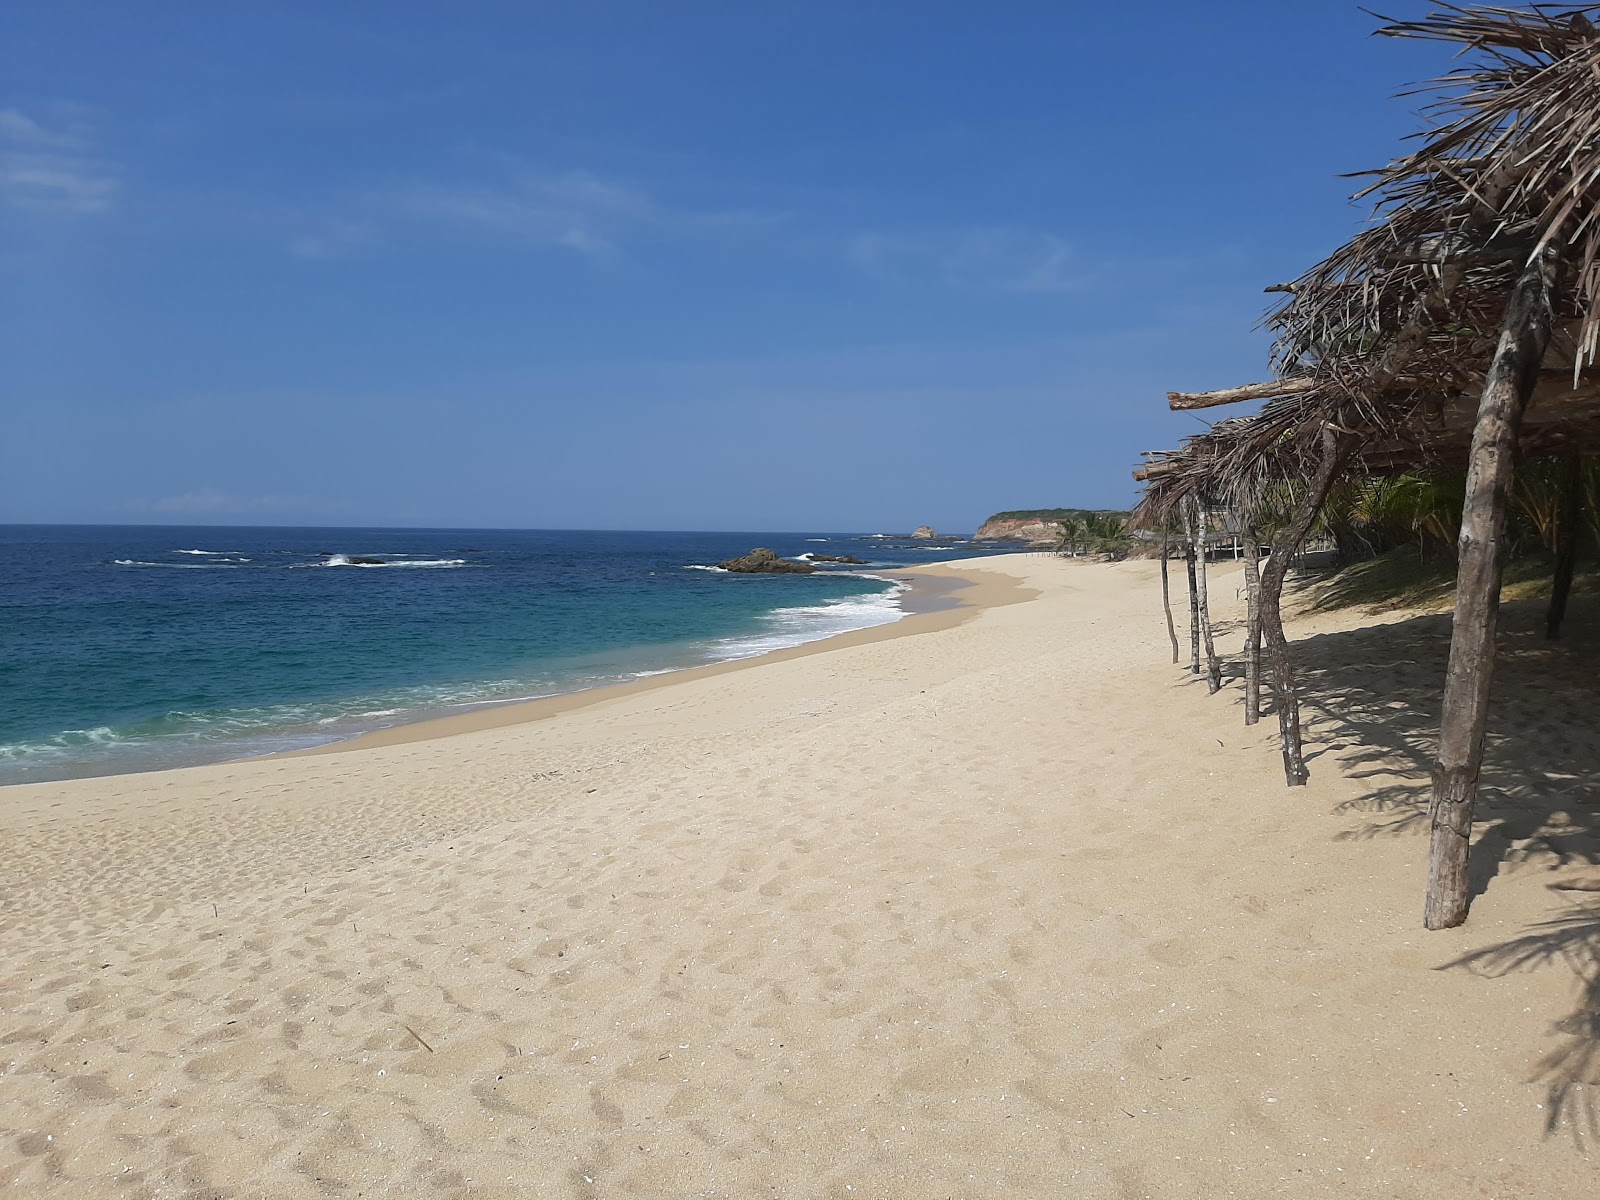 Foto de Playa La Palma Sola com areia brilhante superfície